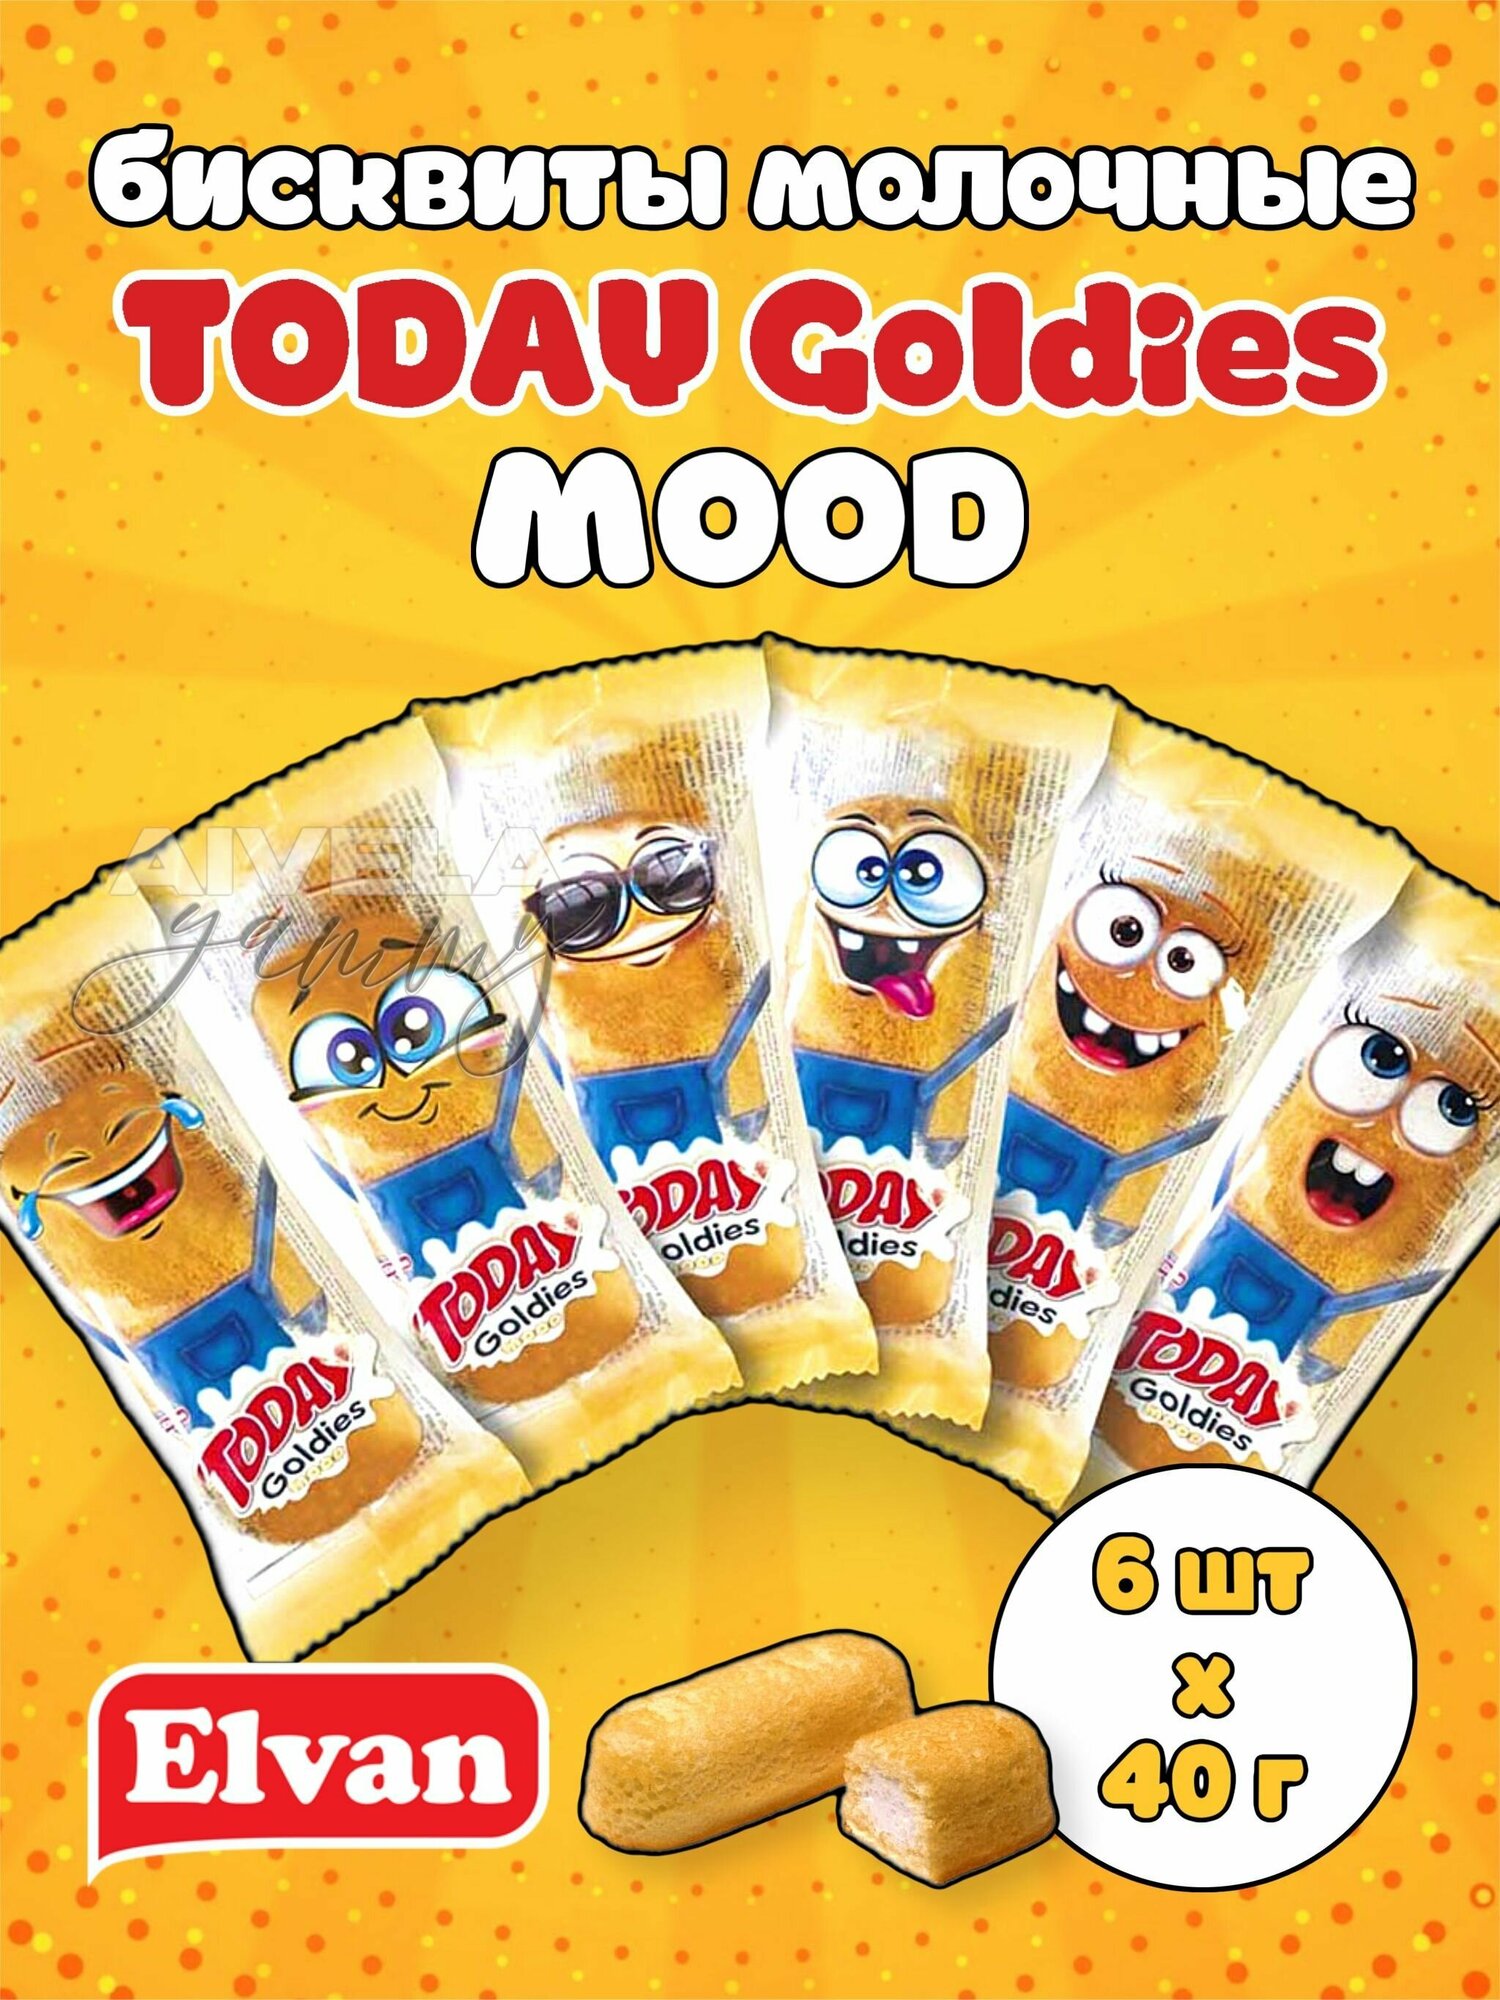 Elvan Today Goldies Mood/ Детские ванильные пирожные с молочной начинкой в индивидуальных упаковках в виде смайликов 6 бисквитов Тудэй Голдис Муд